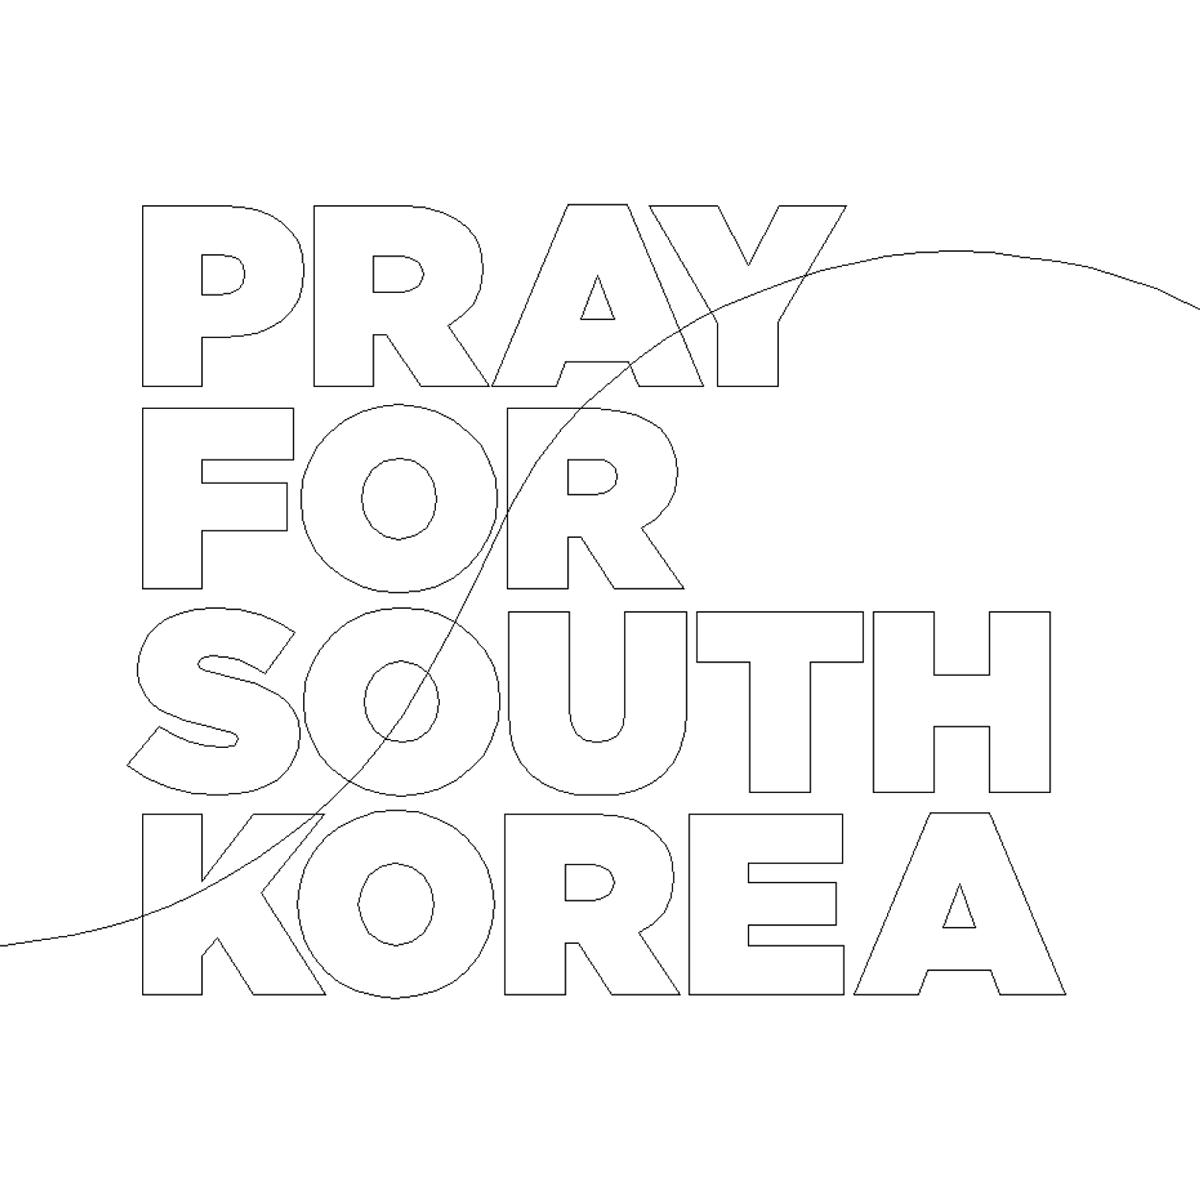 Pray for south Korea South Korea design modern poster